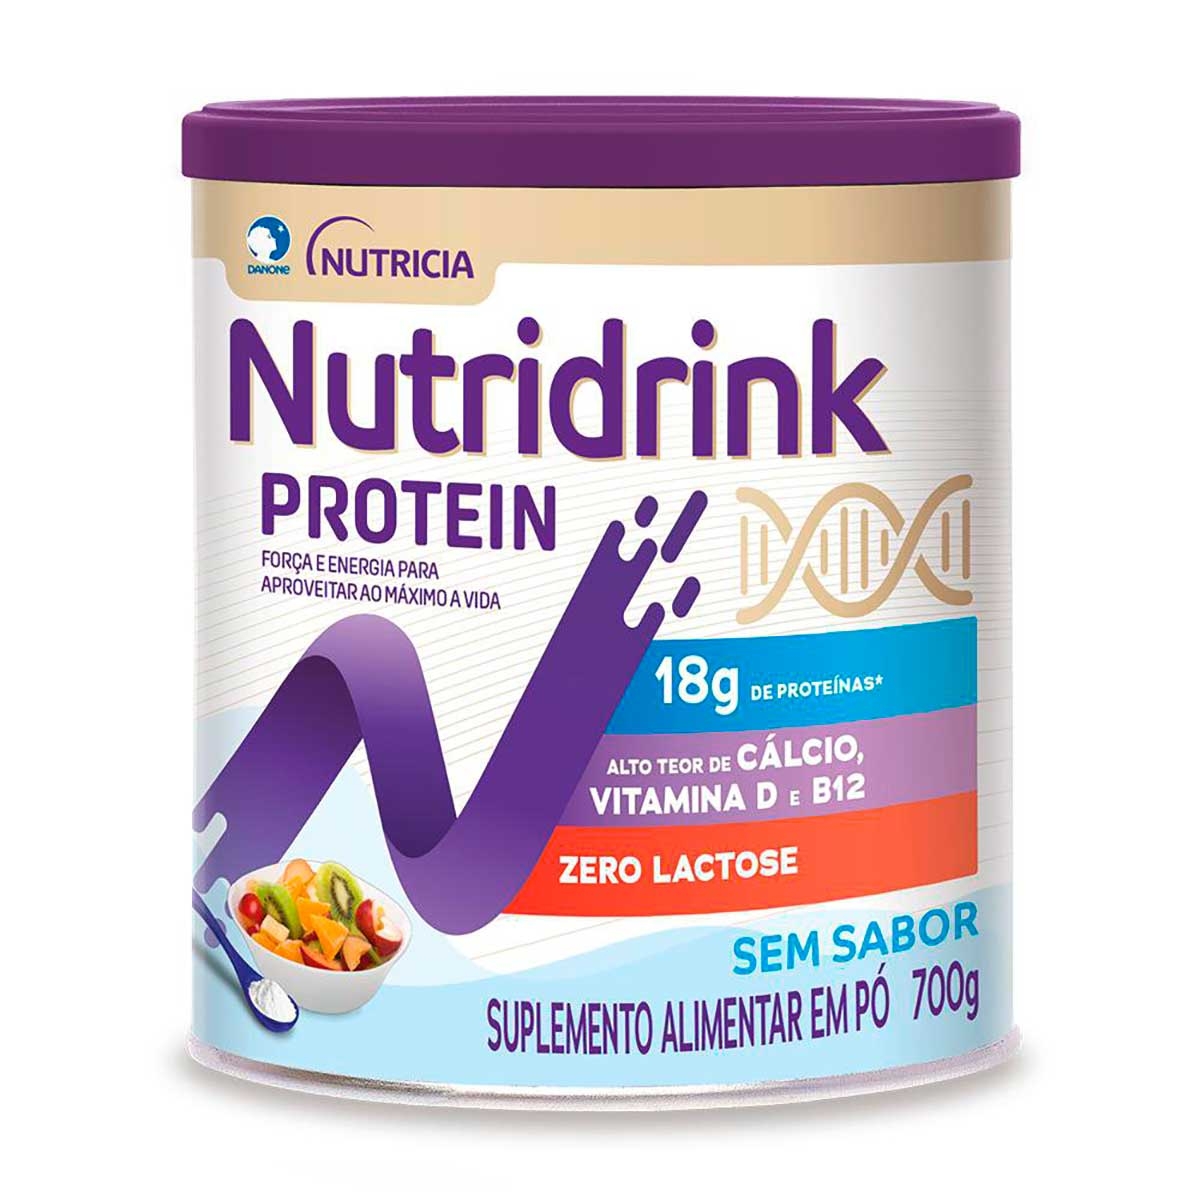 Suplemento Alimentar em Pó Nutridrink Protein Sem Sabor 700g